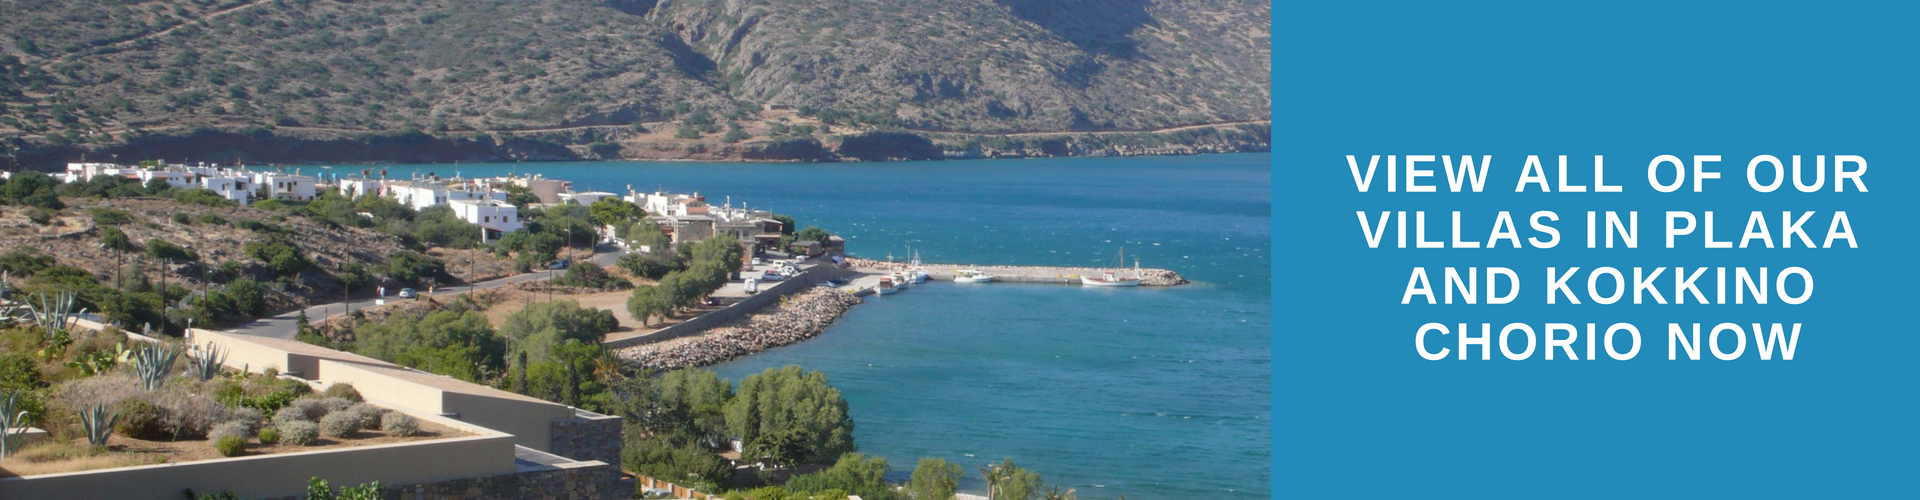 Beaches in Plaka and Kokkino, Crete - Crete Escapes